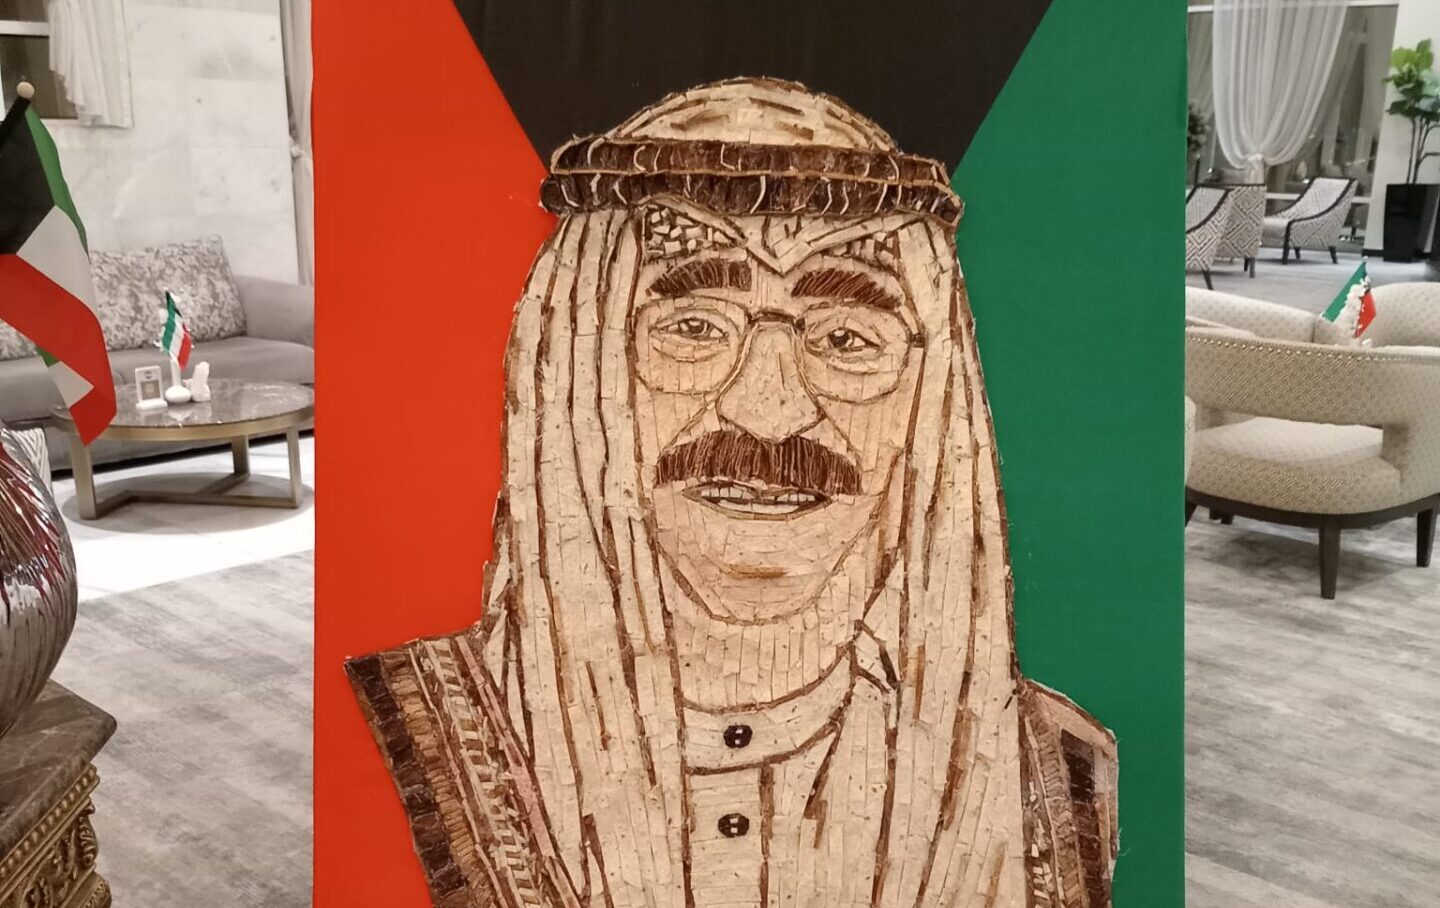 Mosaico di pizza targato Riggio per la liberazione del Kuwait